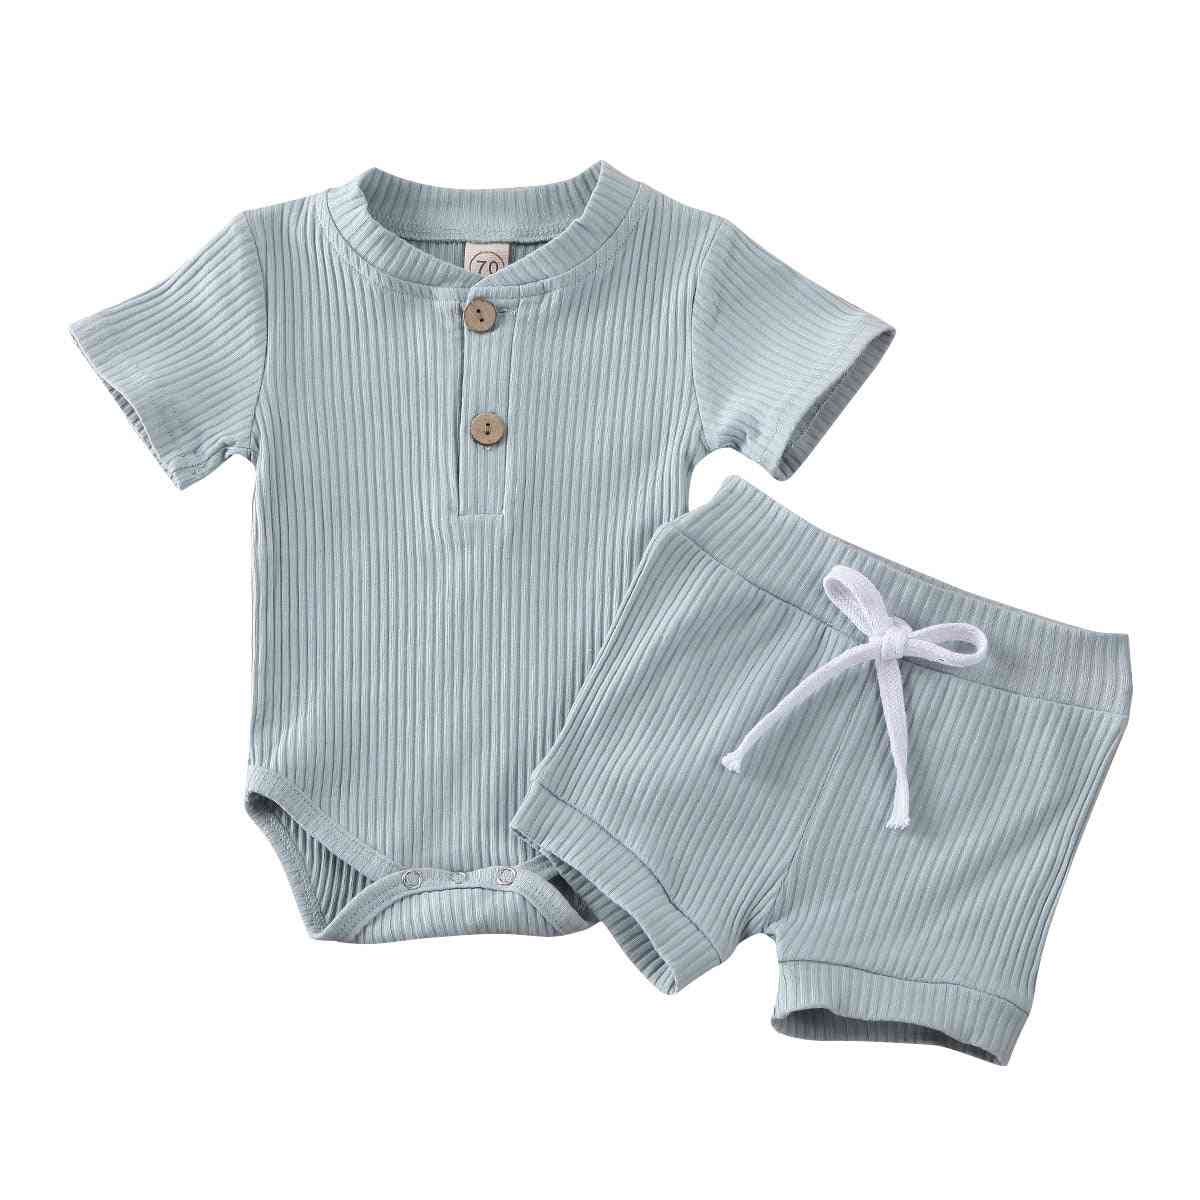 Baby sommer tøj, kort ærme, bodysuit outfits til børn - blå 1/6 m